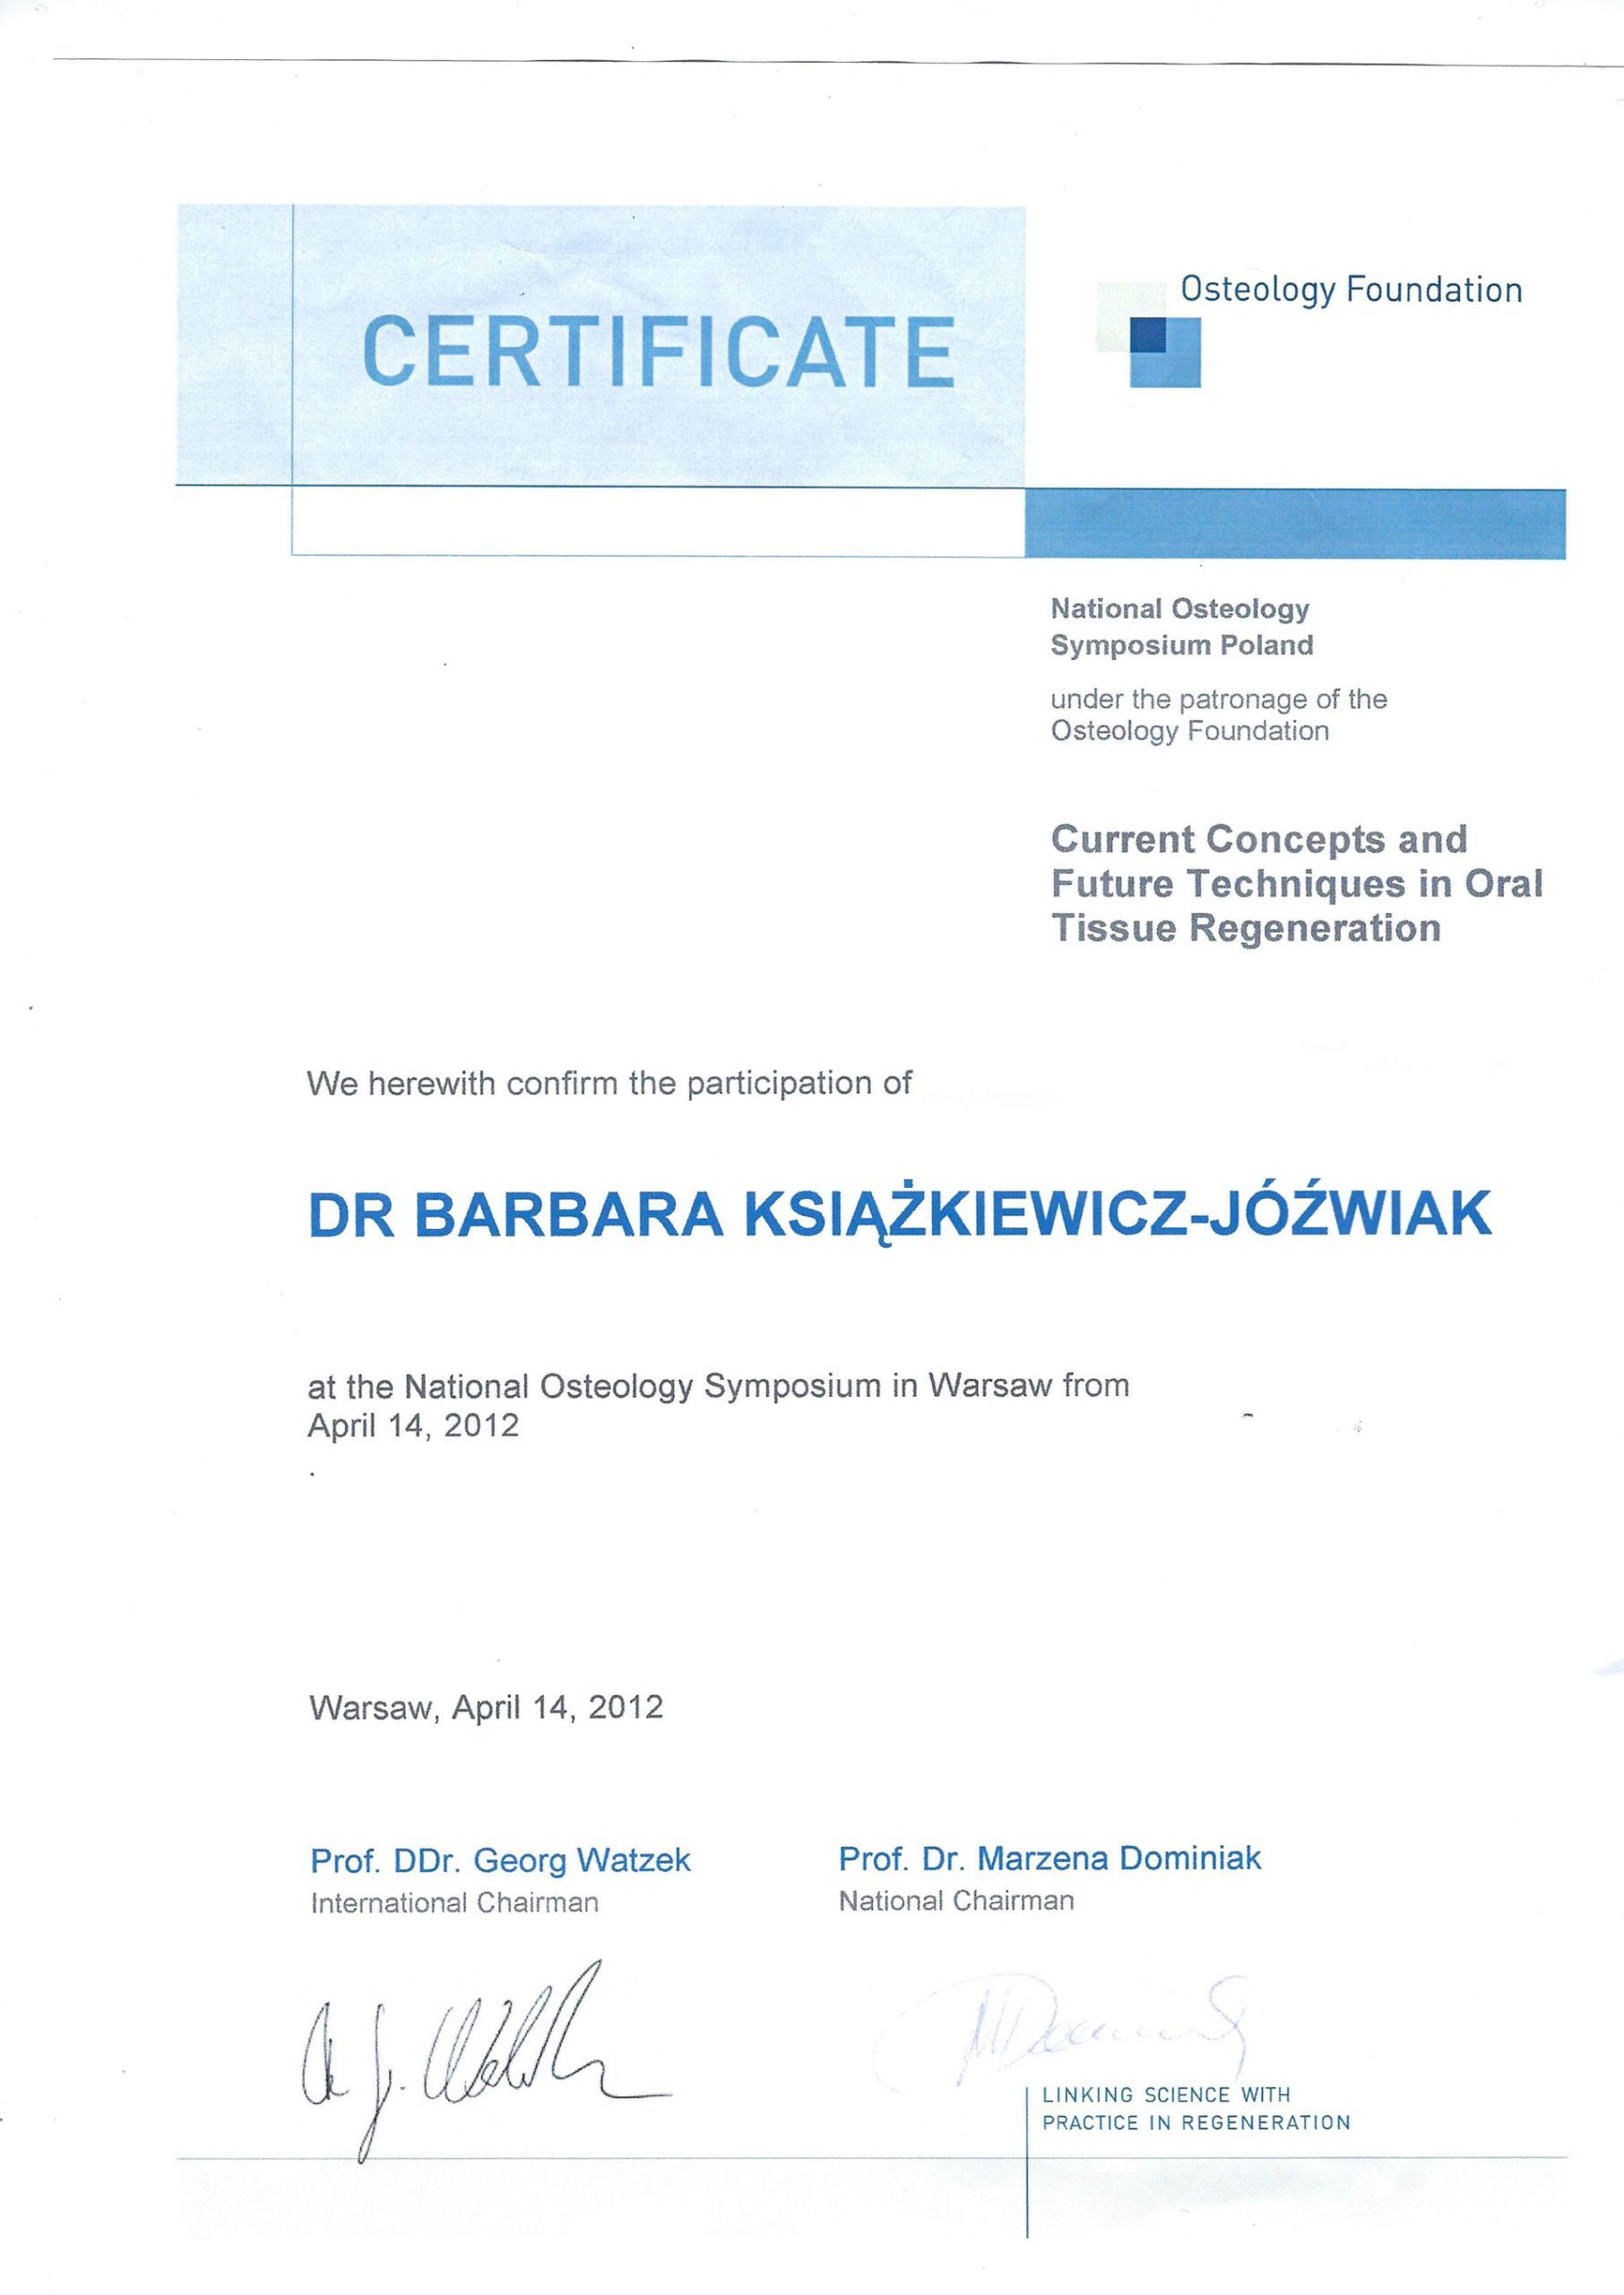 Barbara Książkiewicz-Jóźwiak certyfikat 46